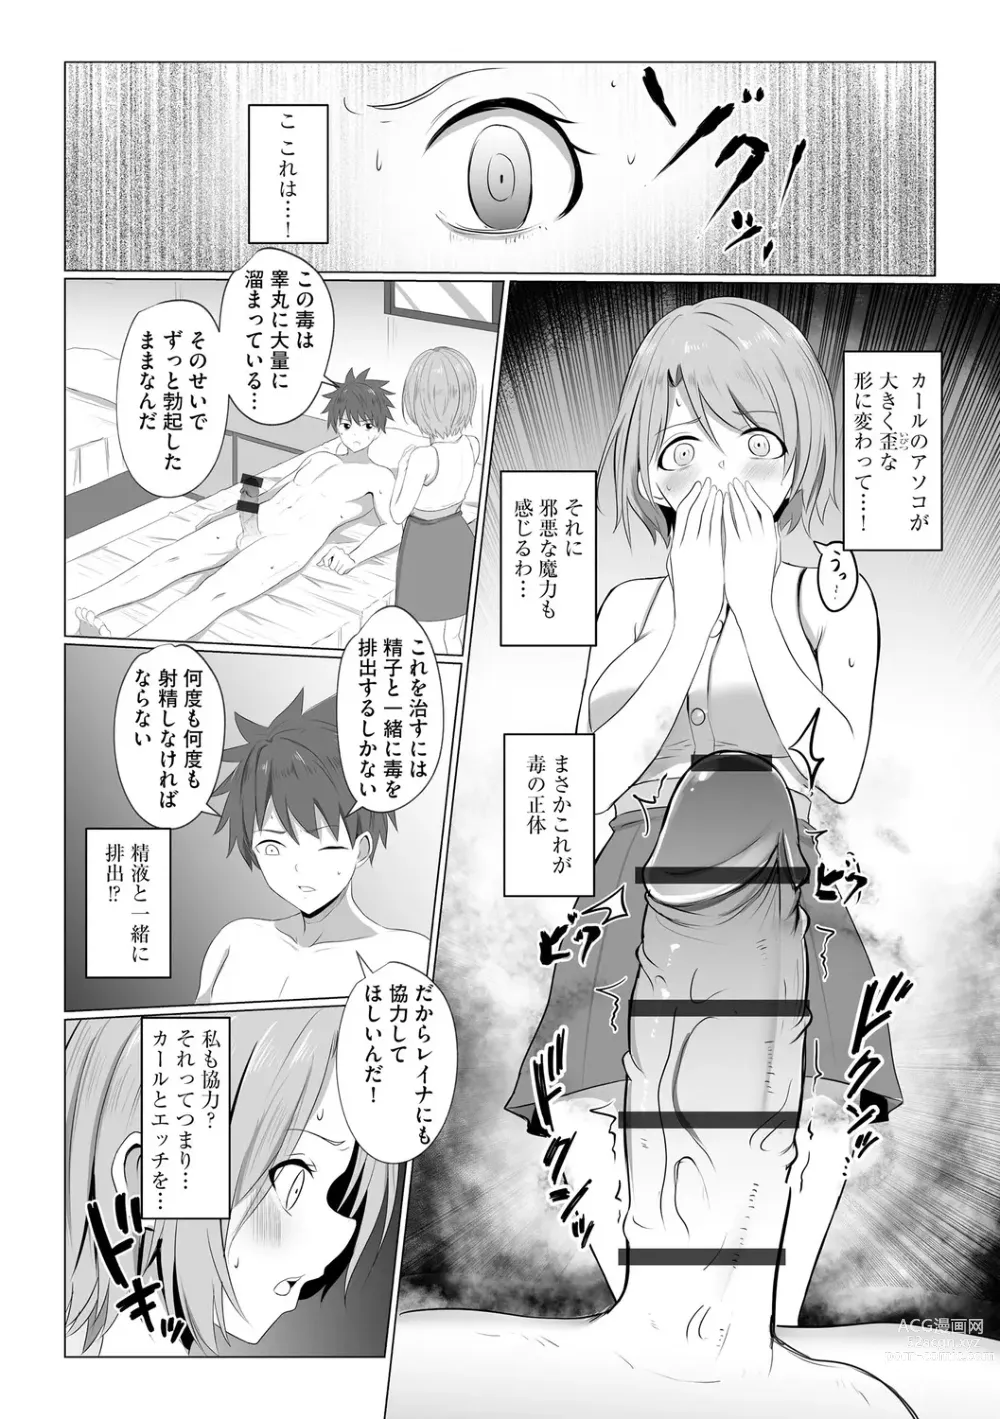 Page 12 of manga Watashi ga Inma ni Ochiru made